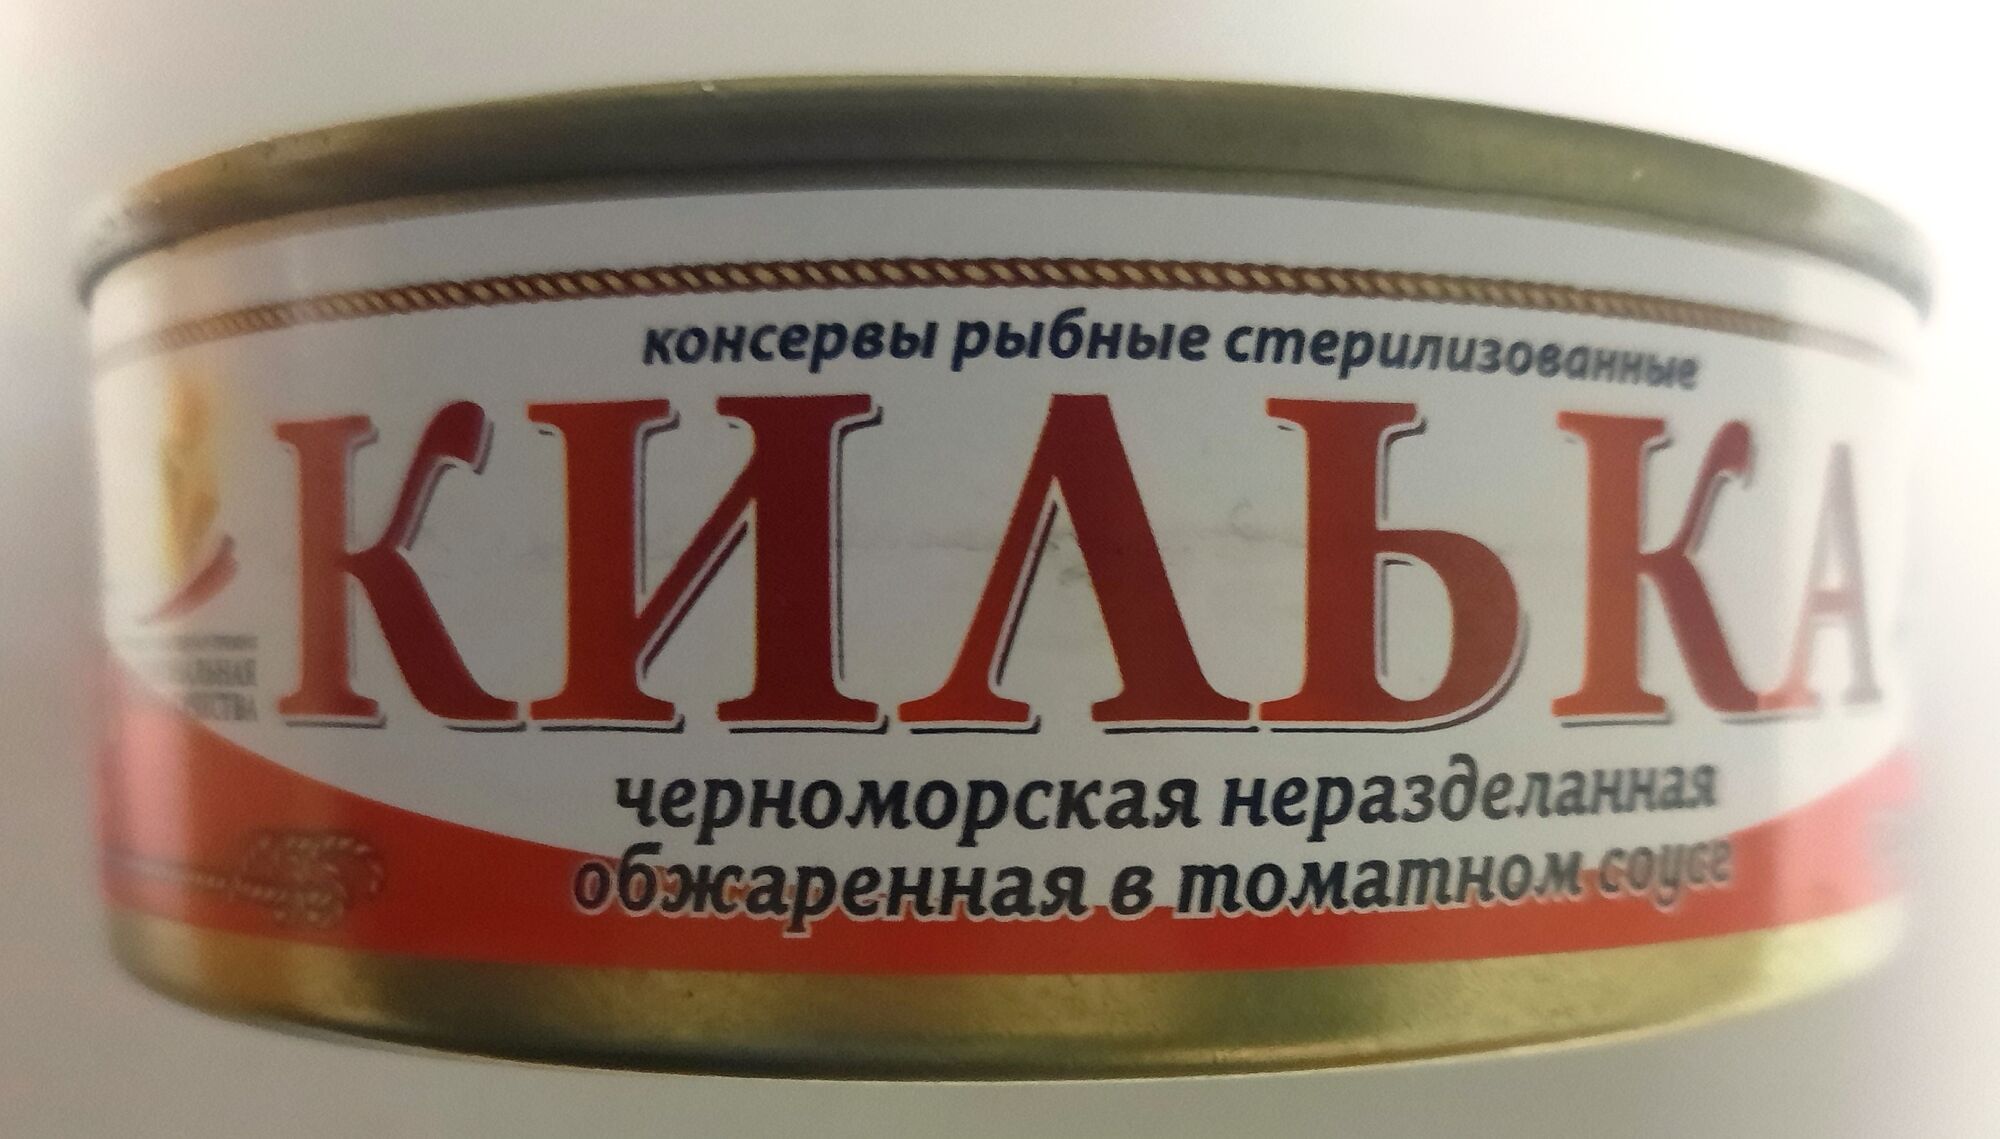 Килька черноморская неразделанная обжаренная в томатном соусе (банка жестяная) 240 гр